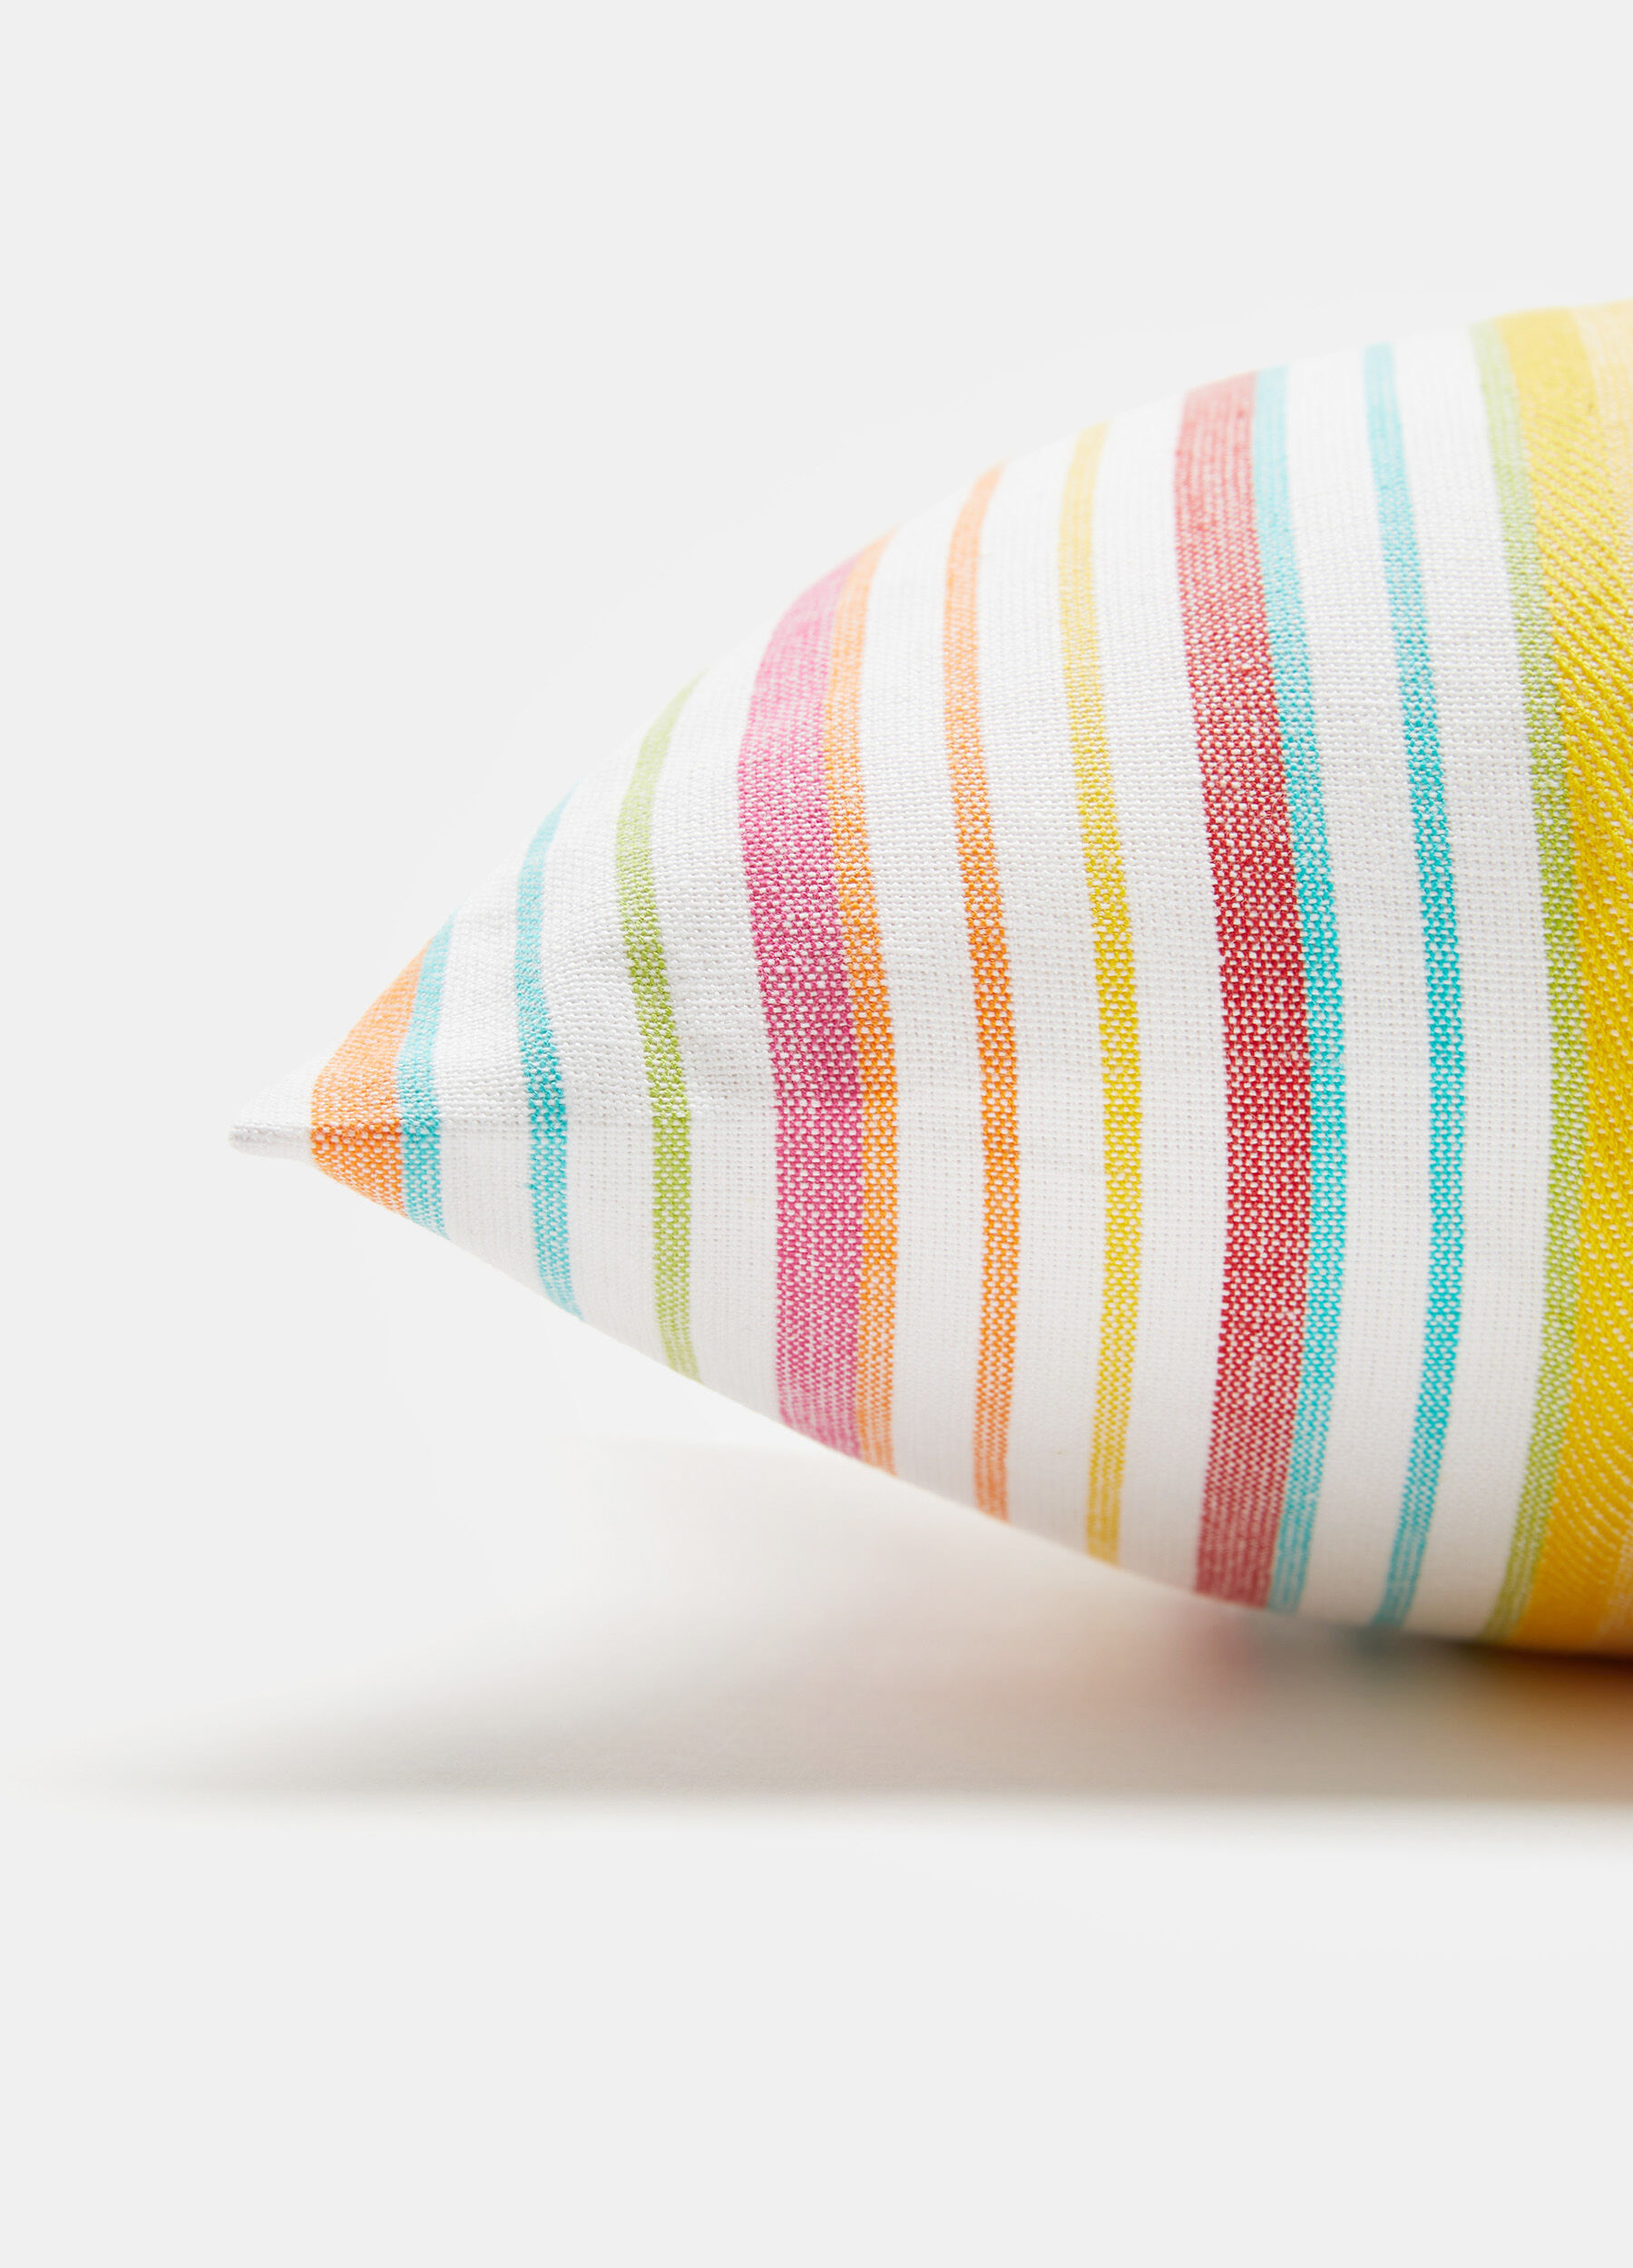 yarn-dyed striped rectangular cushion